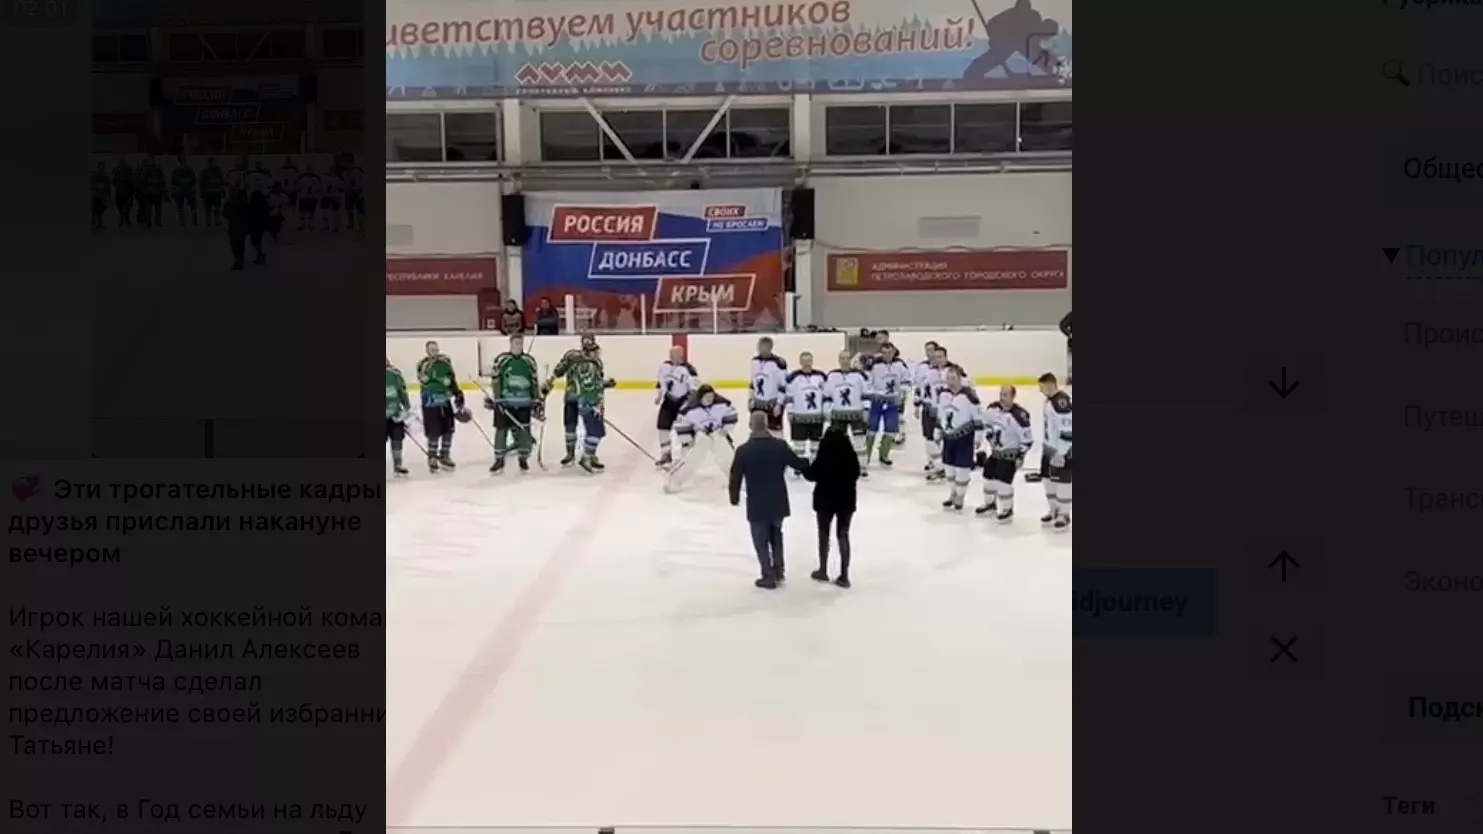 Игрок хоккейной команды «Карелия» сделал предложение девушке прямо на льду